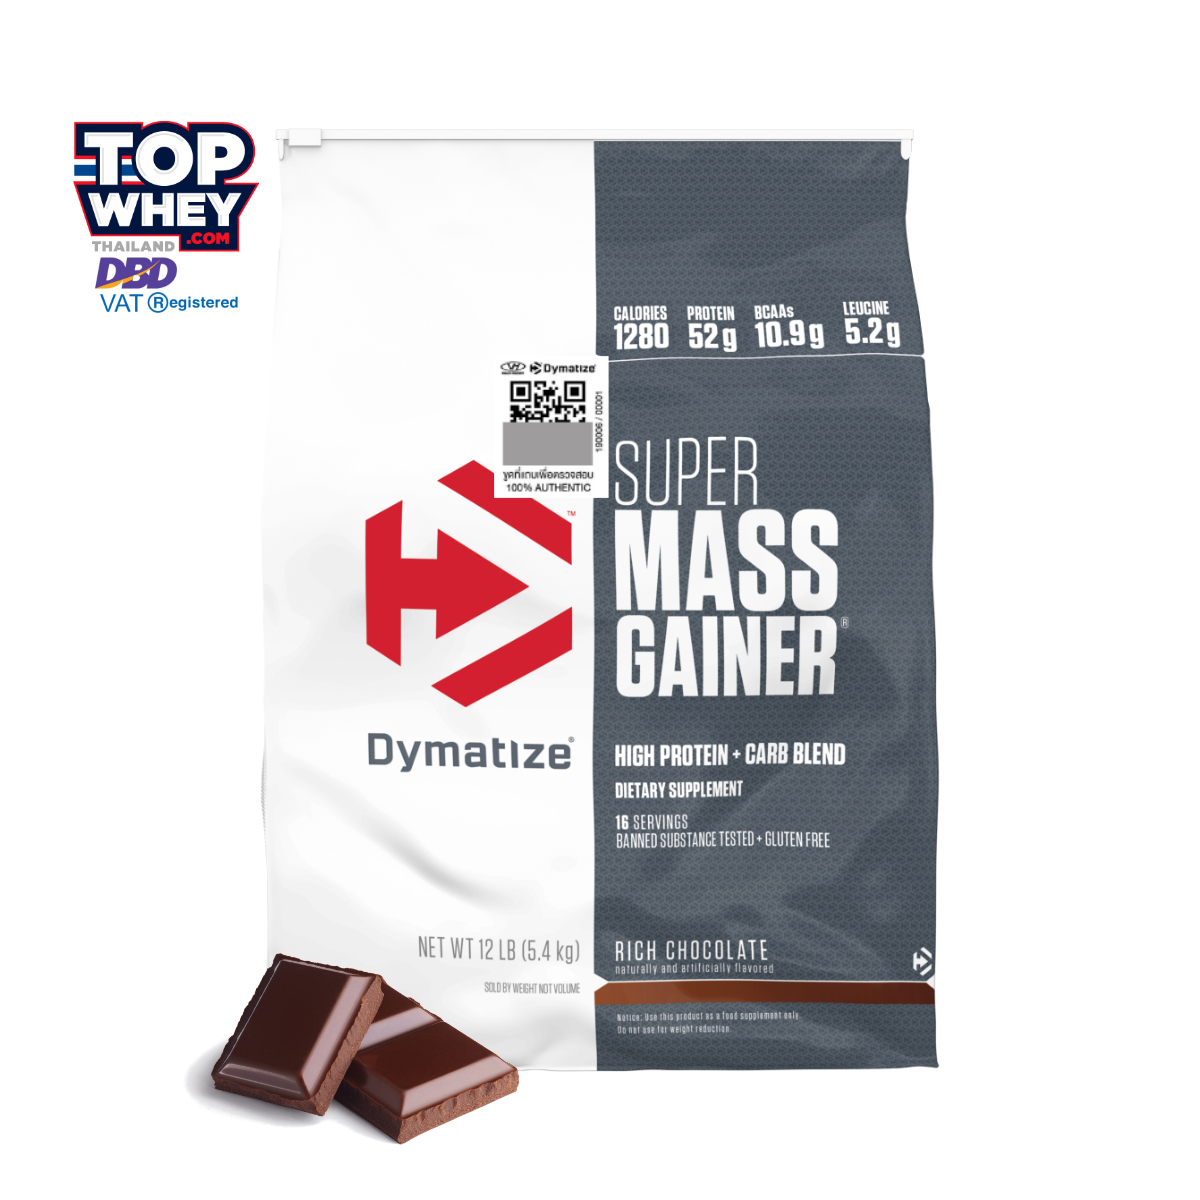 Dymatize Super Mass Gainer 12lb (5.44 kilo) - Rich Chocolate – เวย์โปรตีนสร้างกล้ามเนื้อ  สำหรับเพิ่มน้ำหนัก  มีปริมาณโปรตีนและคาร์โบไฮเดรตที่สูง  เหมาะสำหรับคนที่มีรูปร่างผอม  อ้วนยากหรือต้องการเพิ่มขนาดของกล้ามเนื้อ  เพิ่มน้ำหนัก